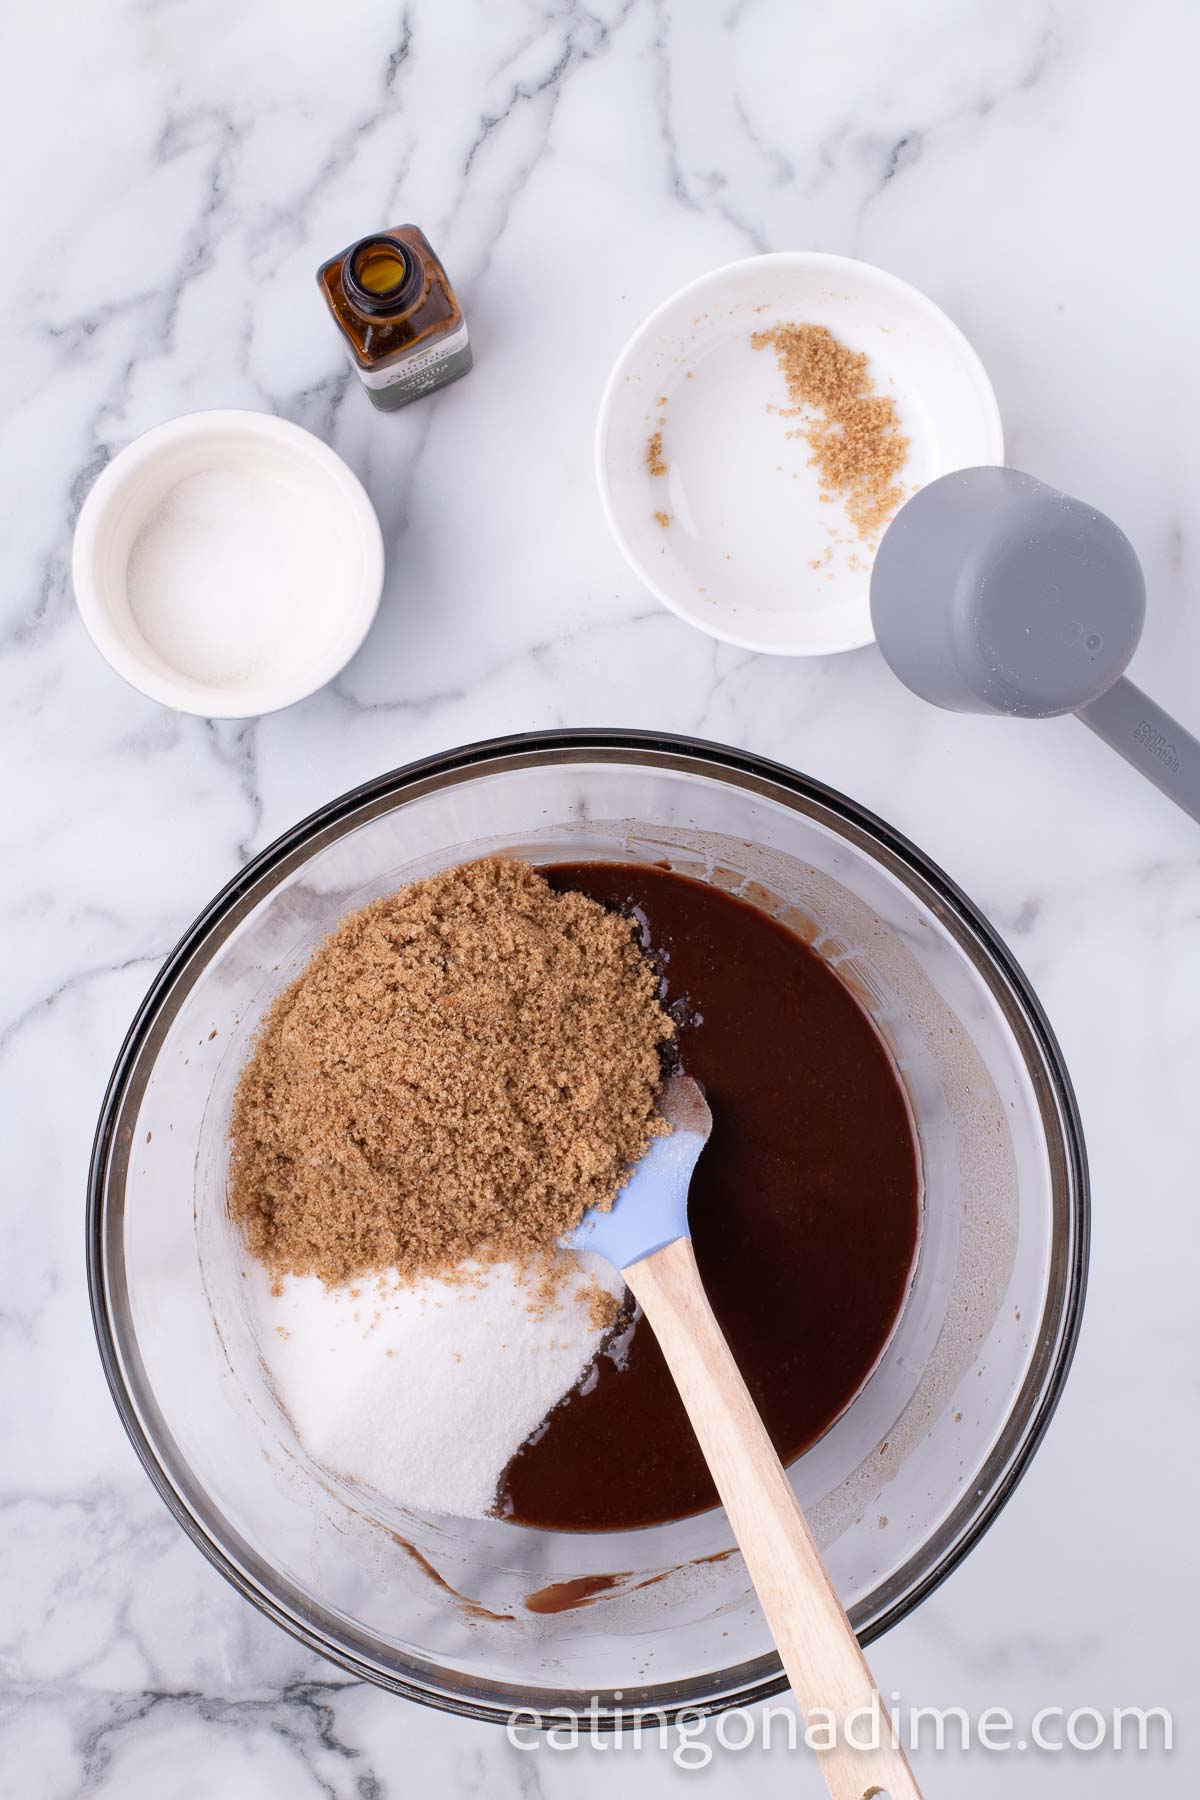 Sugar, brown sugar, and vanilla extract in a bowl